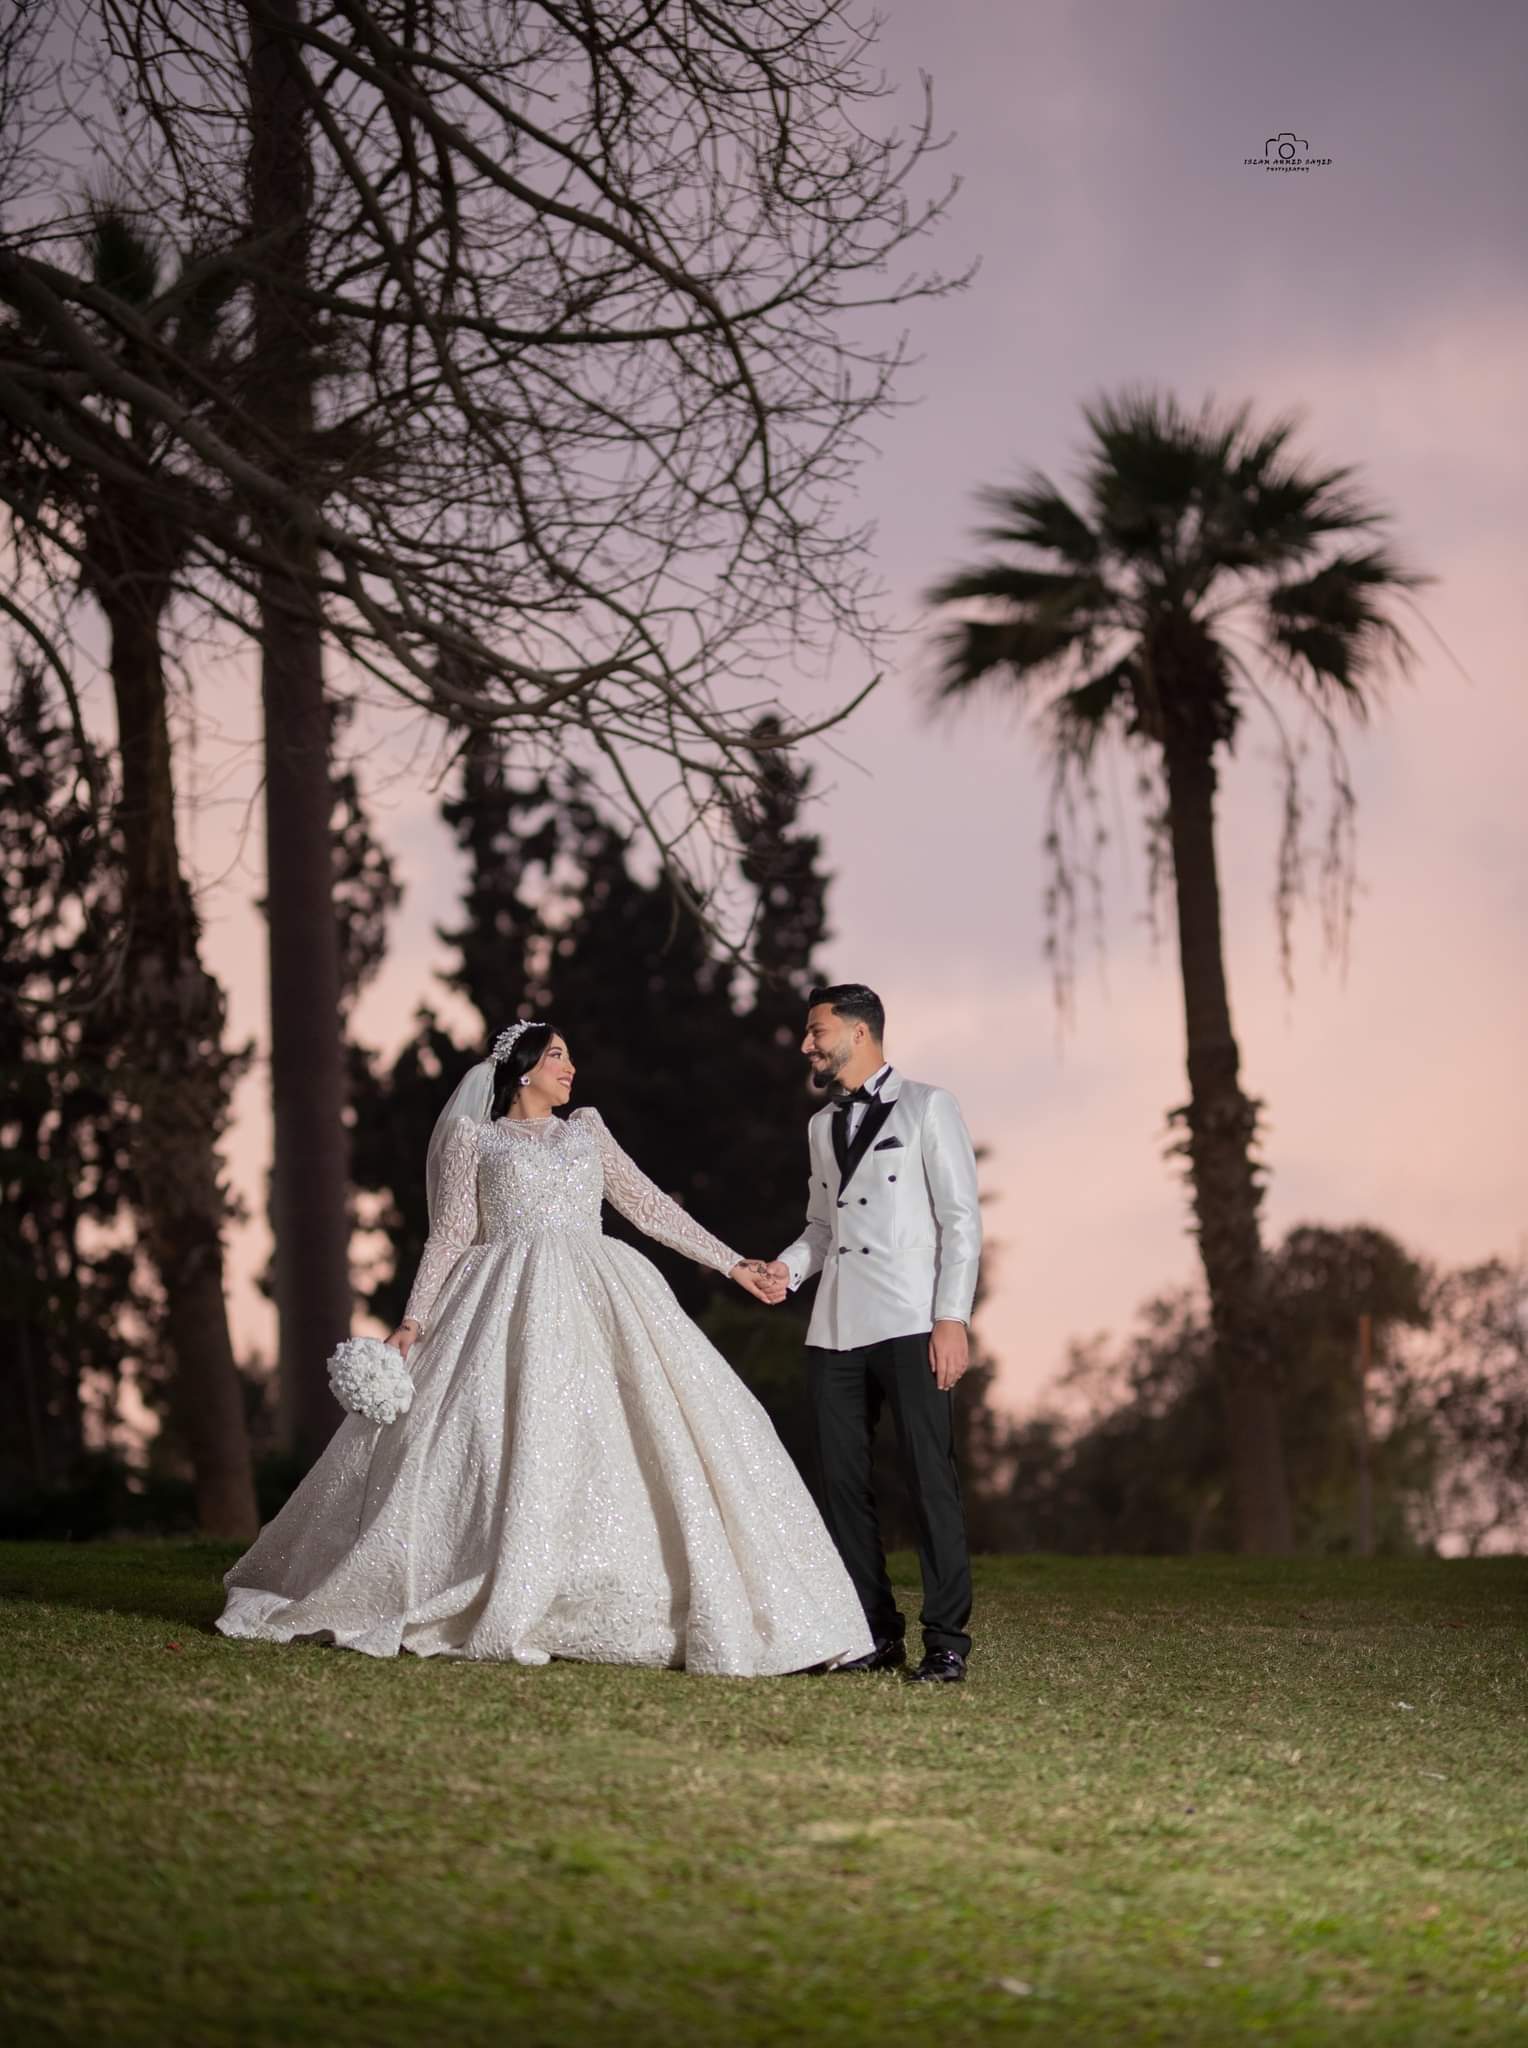 تهنئة بالزواج السعيد لعروس المساء العربي 